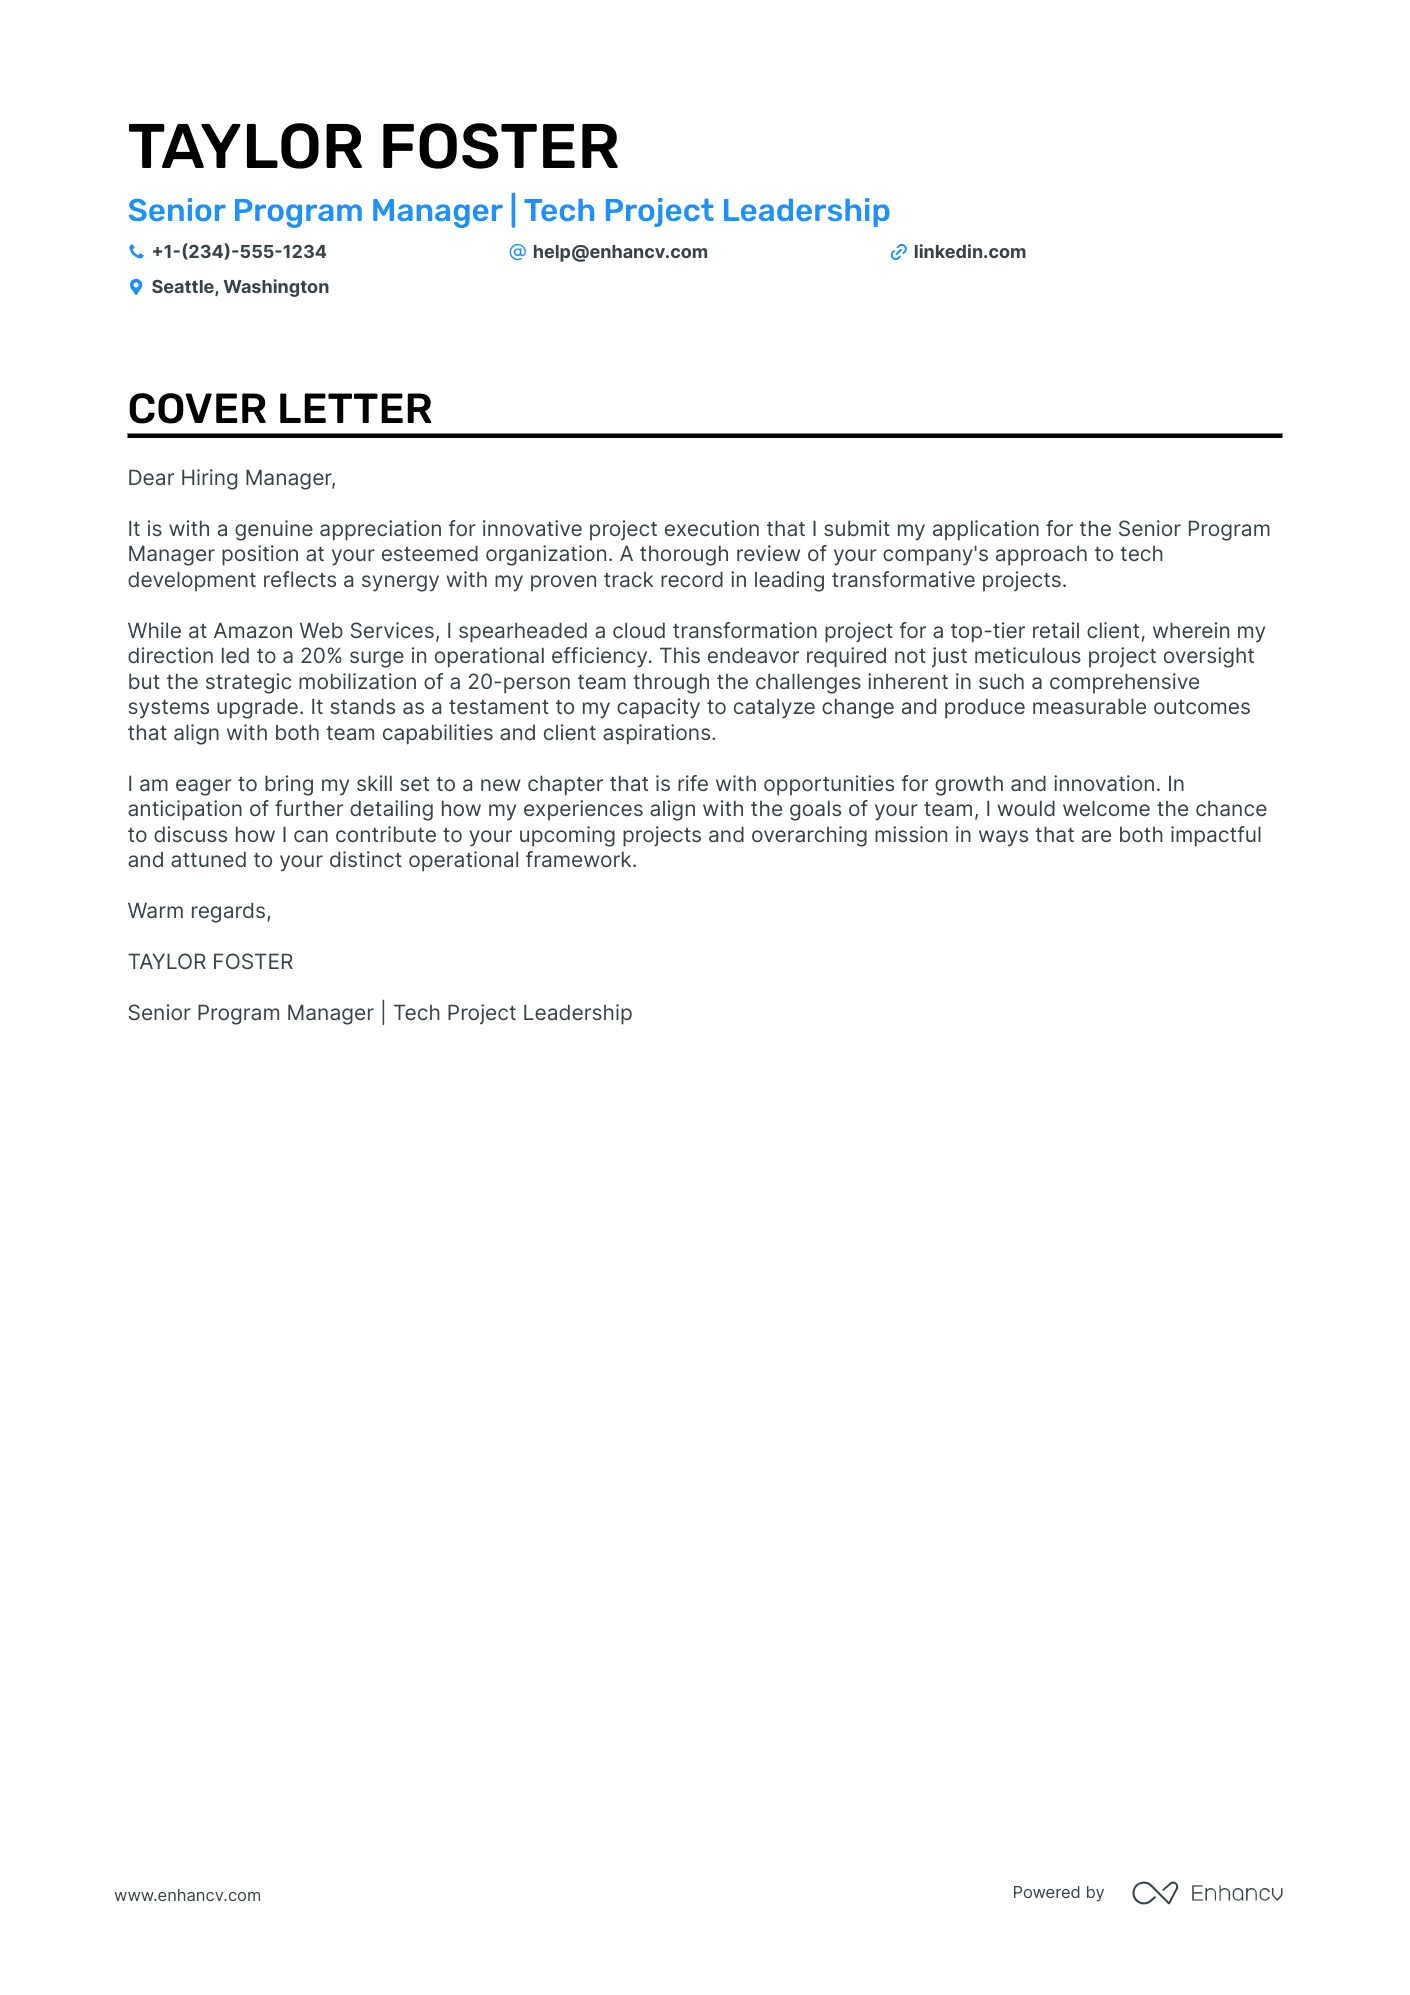 sample cover letter for senior program manager